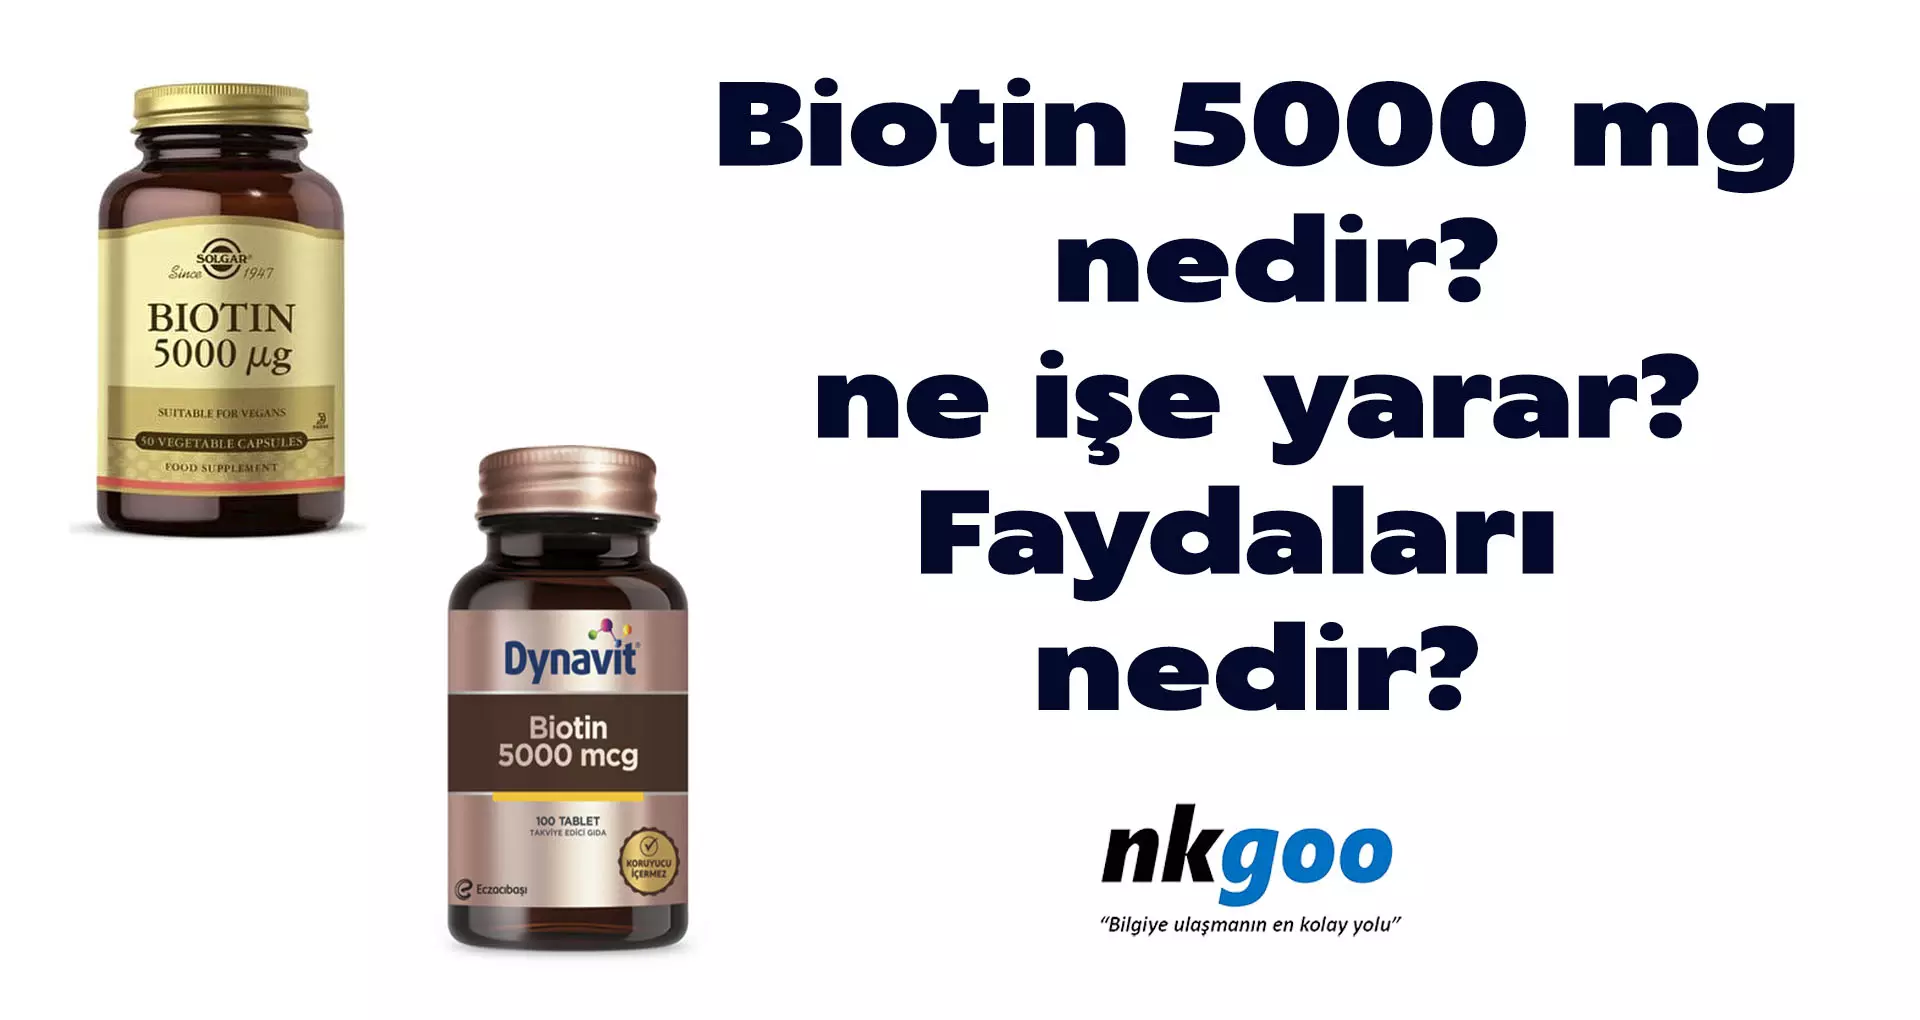 Biotin 5000 mg nedir? Ne işe yarar? Faydaları